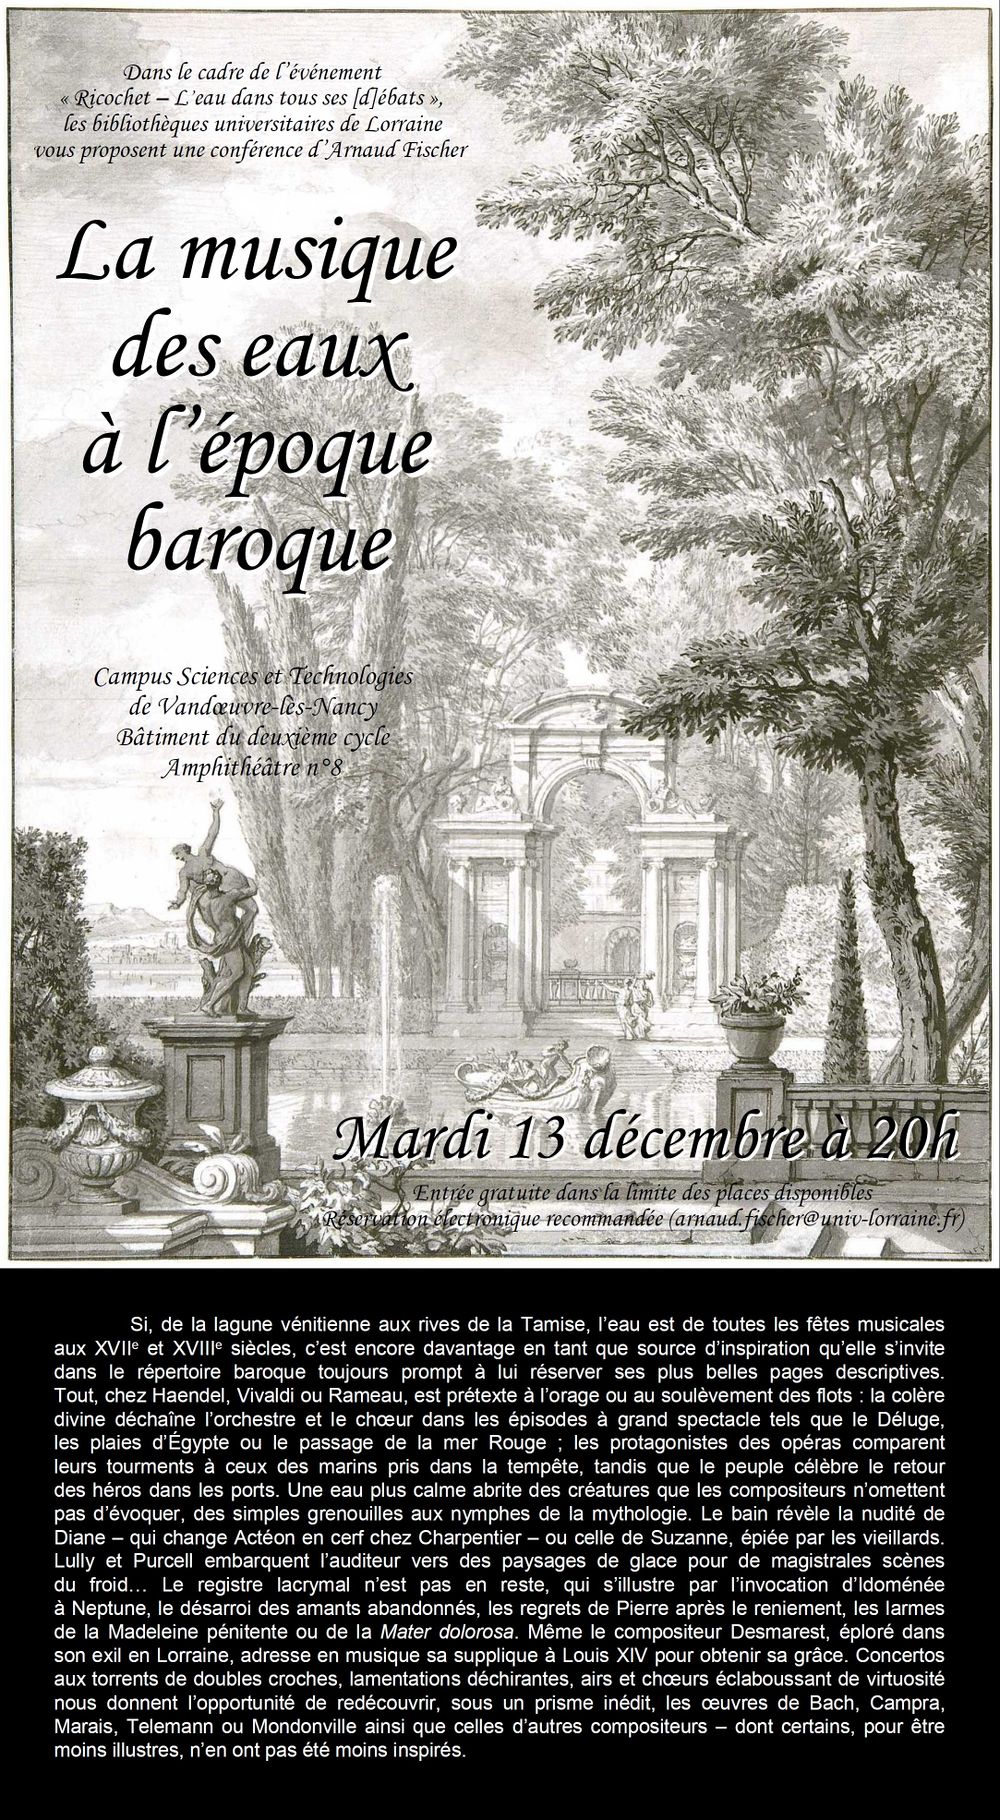 Affiche et resume conference Musique eaux epoque baroque 13 decembre 2016.jpg